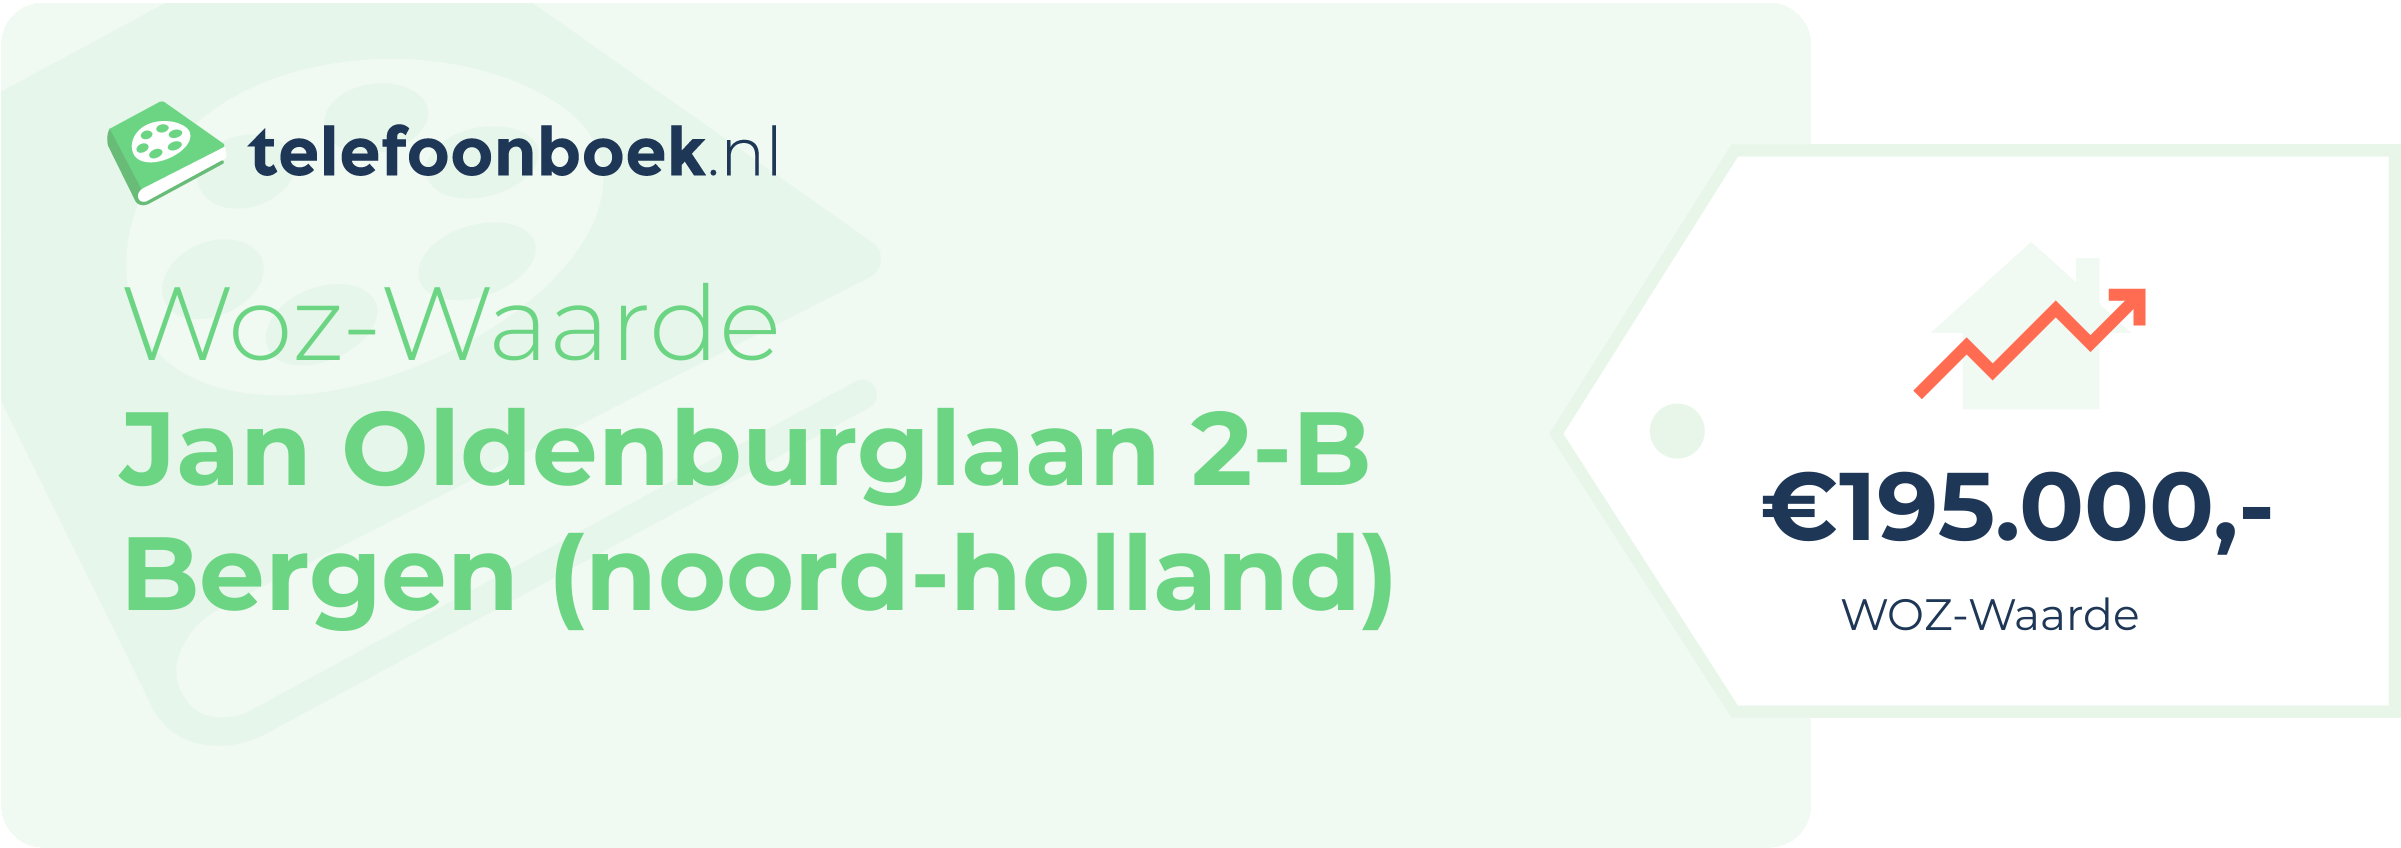 WOZ-waarde Jan Oldenburglaan 2-B Bergen (Noord-Holland)